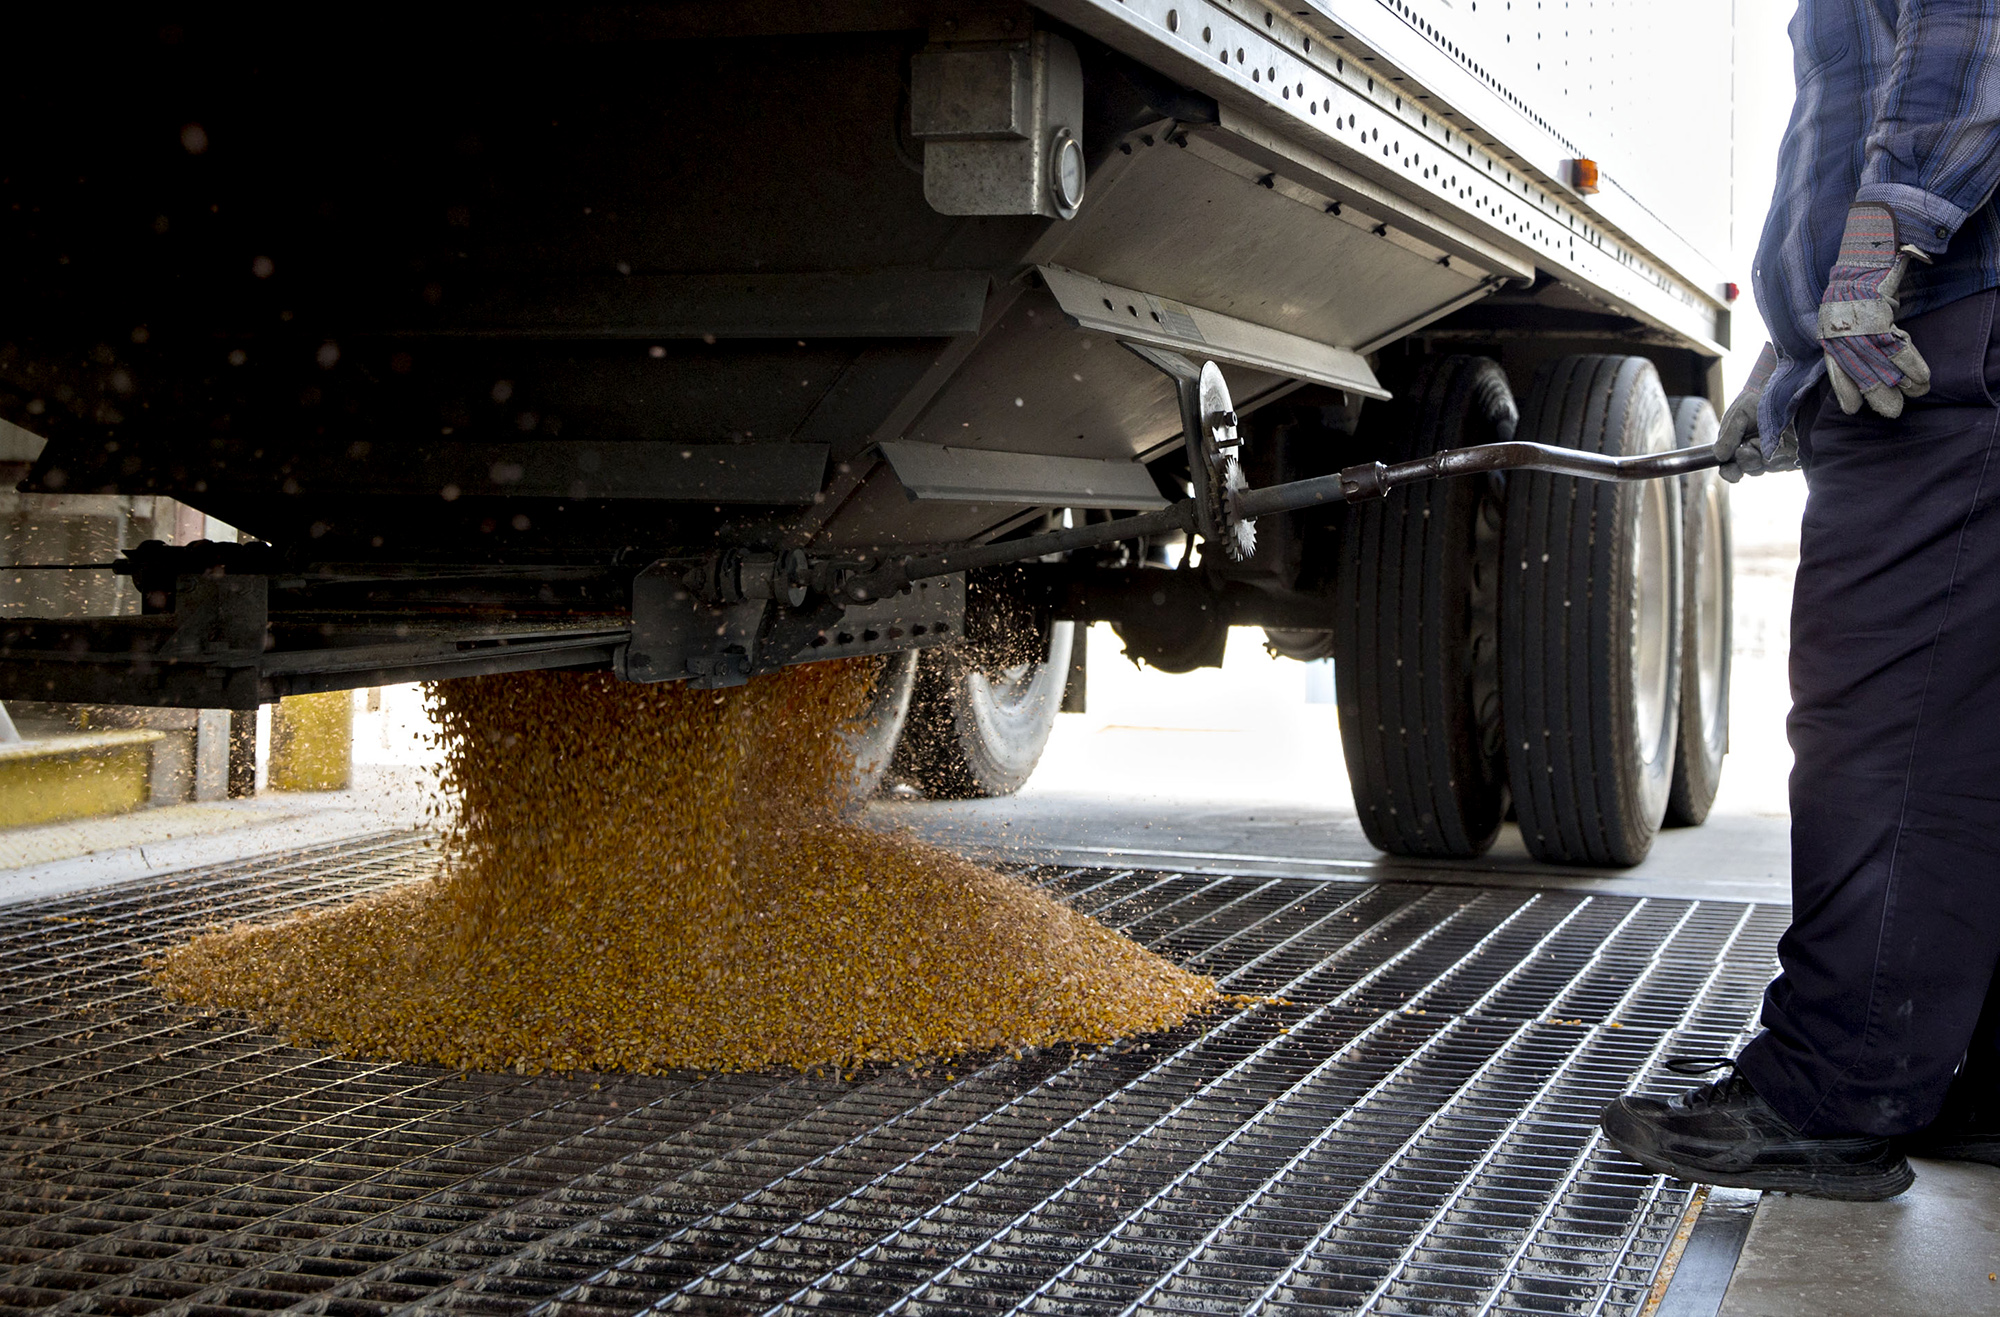 A truck driver unloads corn at the Archer-Daniels-Midland grain facility in Mendota, Illinois.